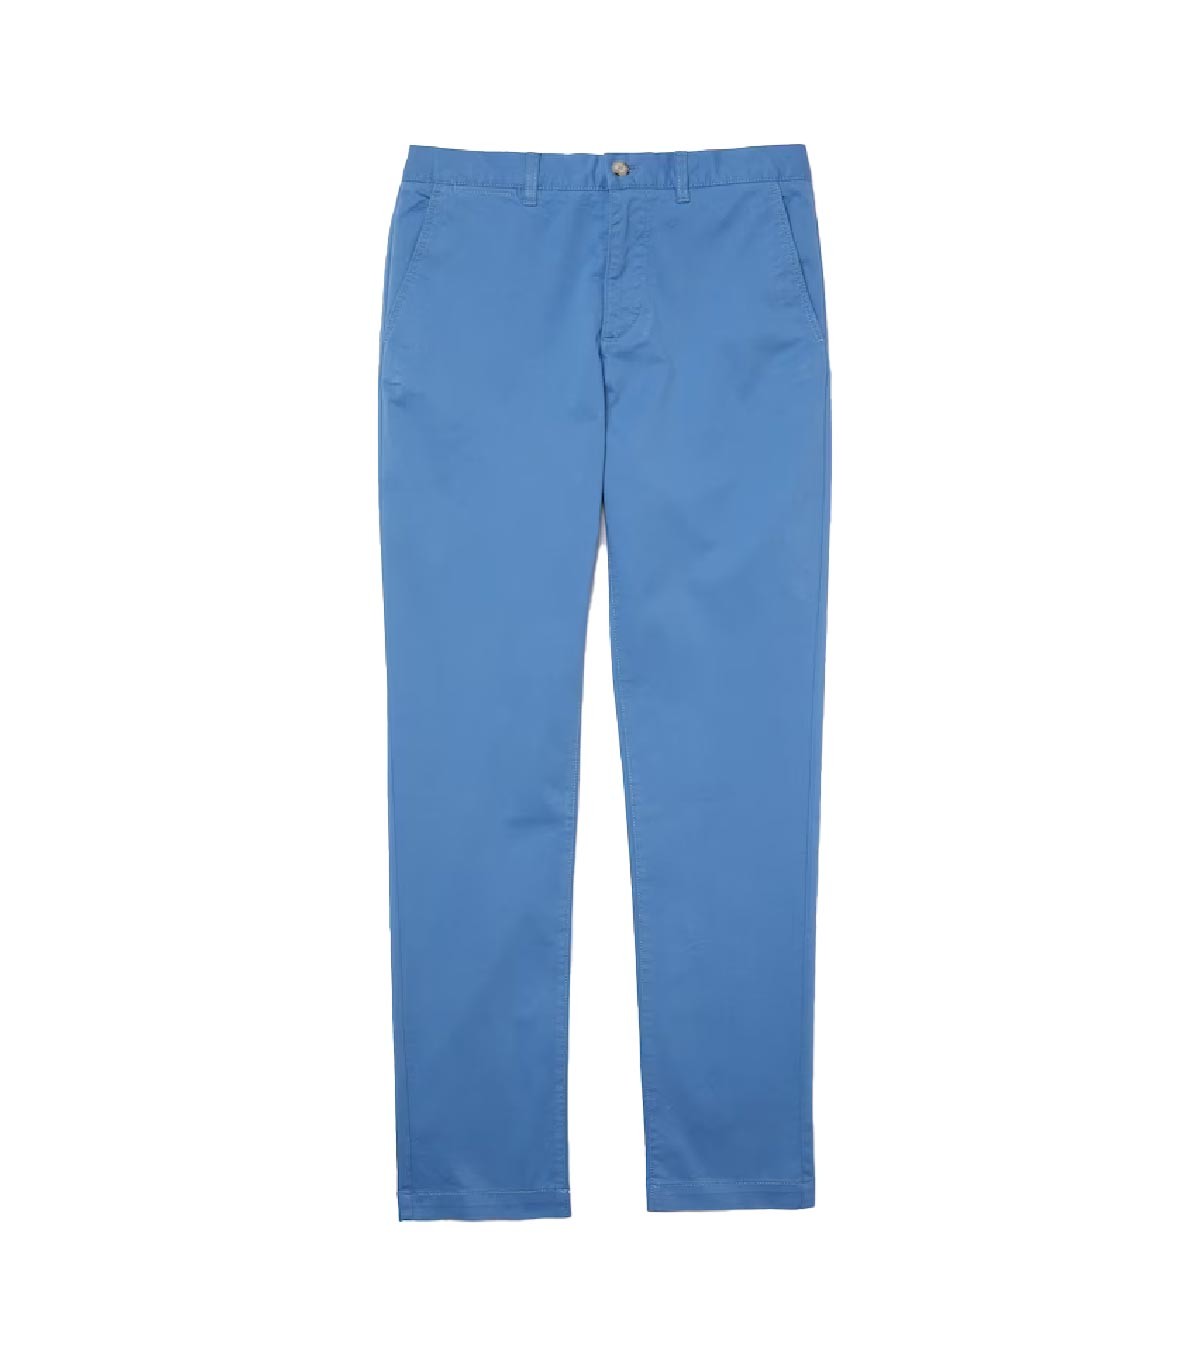 Lacoste - Pantalón Chino Slim Fit - Azul